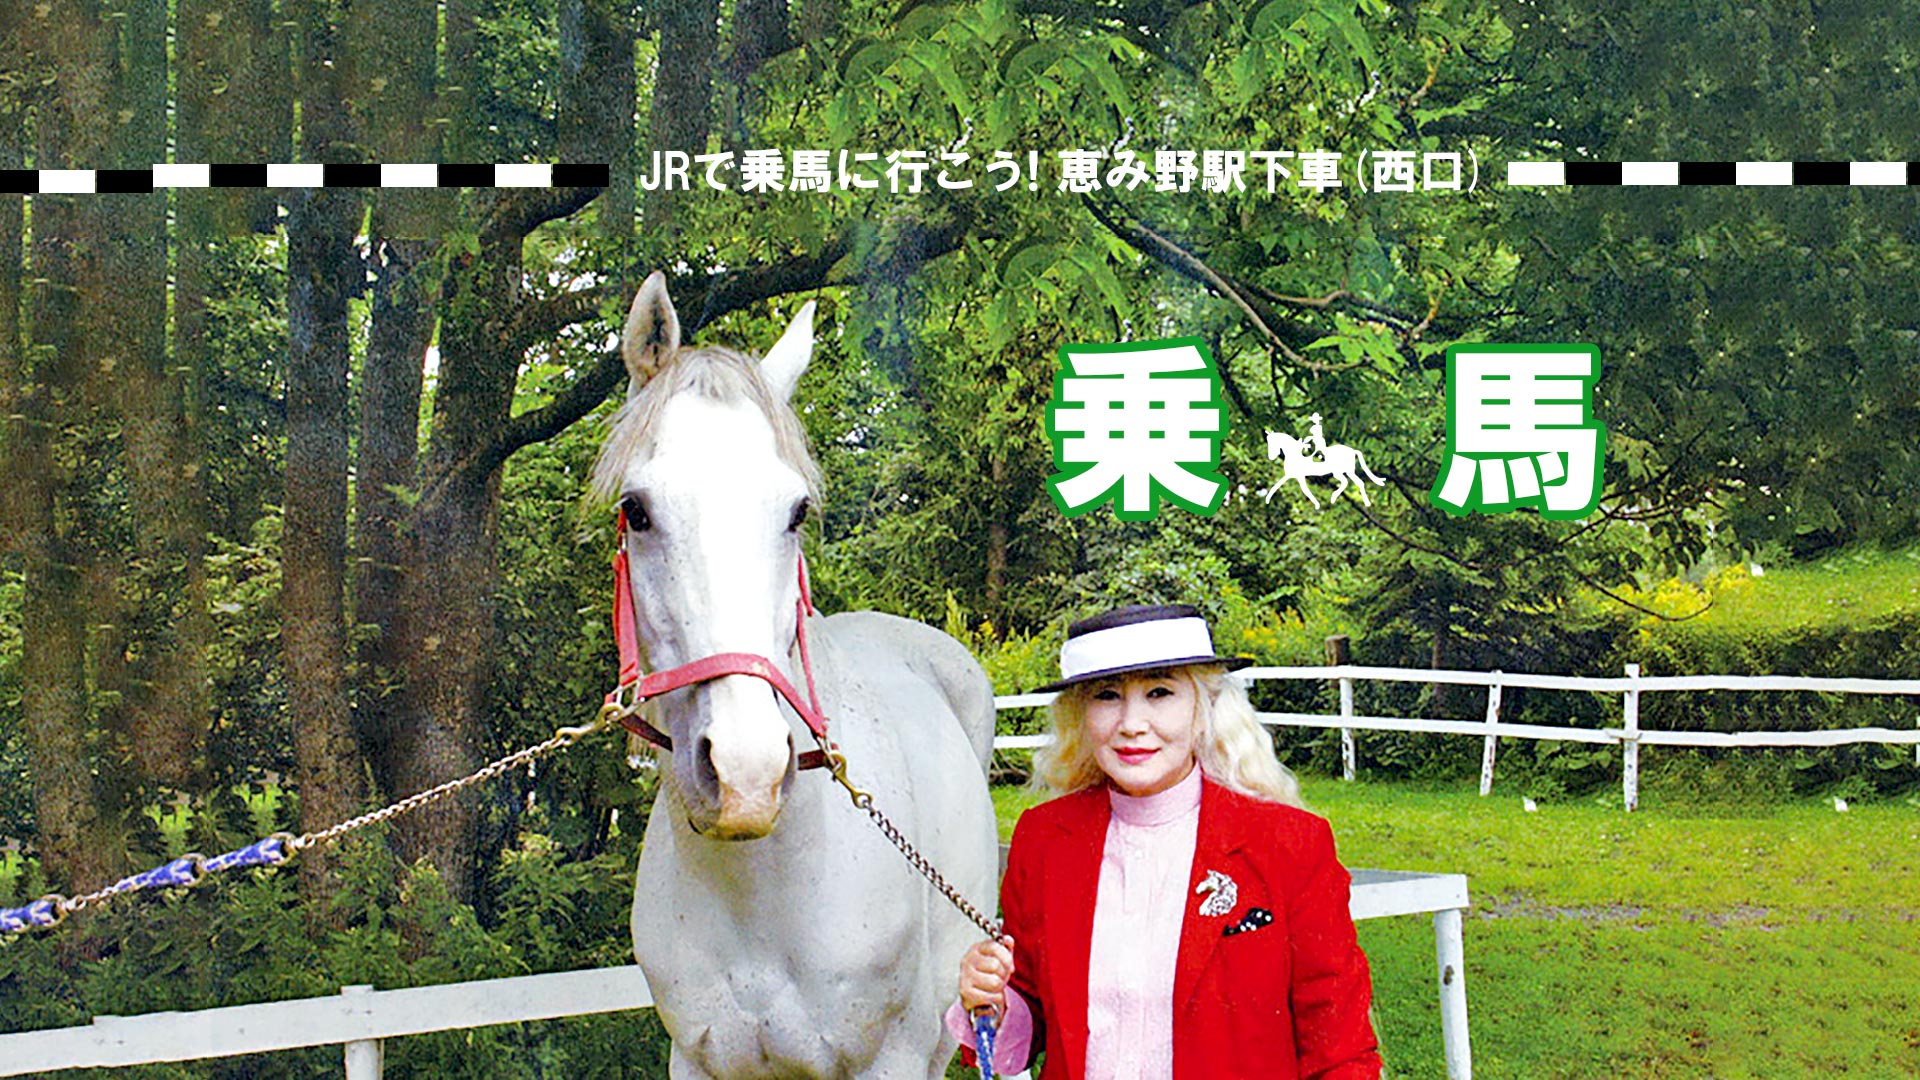 有限会社 すずらん乗馬クラブ 北海道 恵庭市の乗馬クラブ